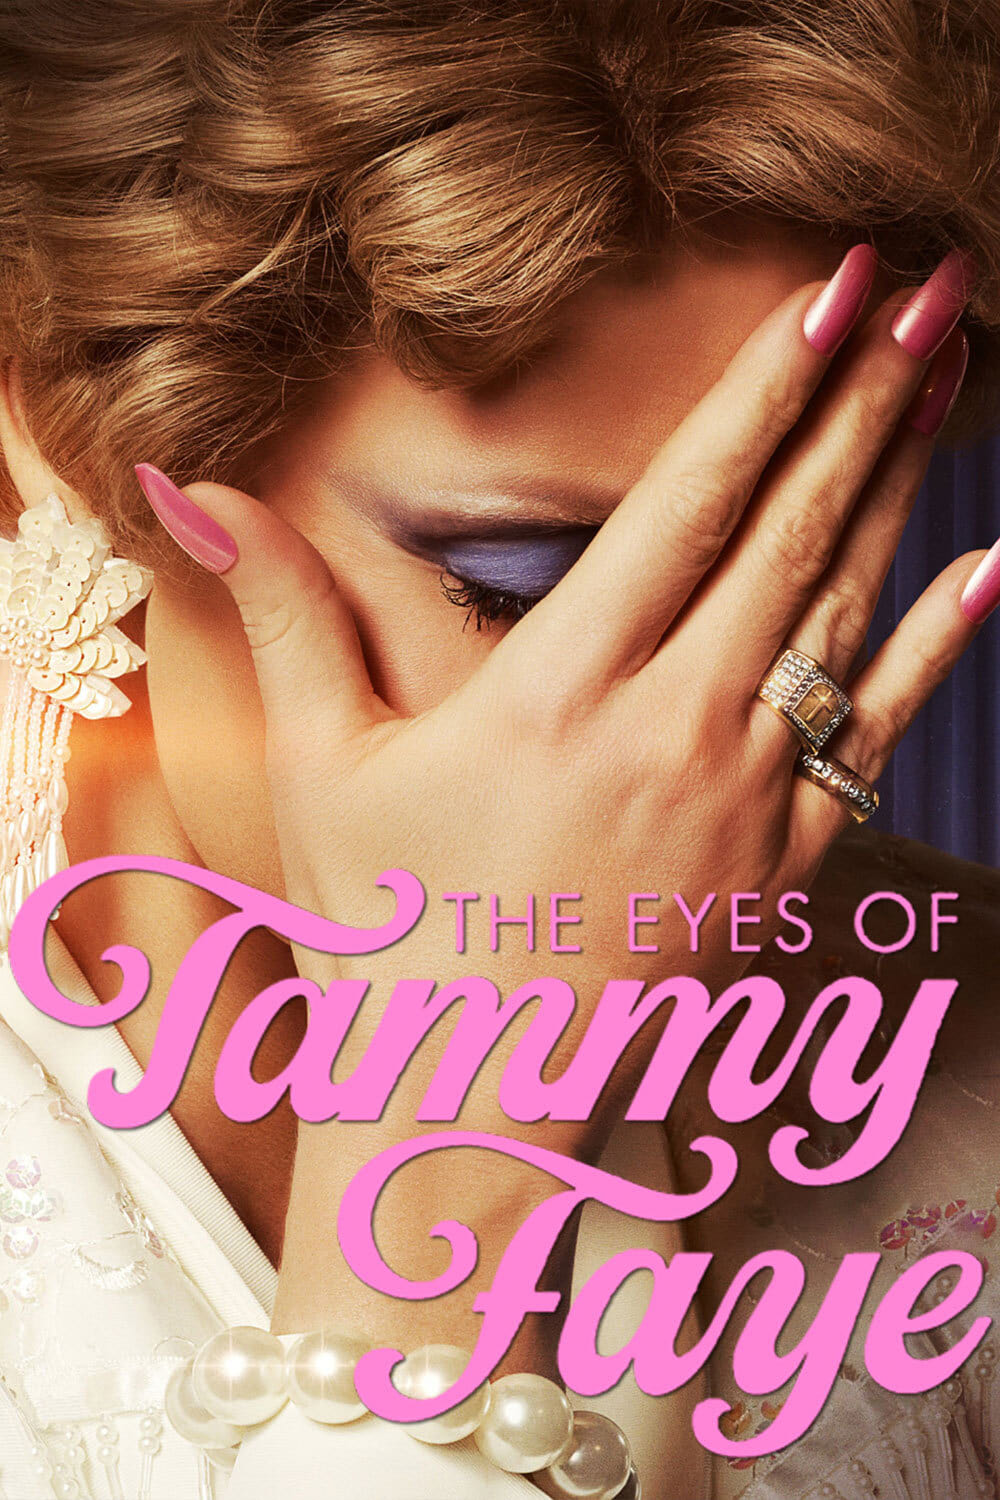 Đôi Mắt Của Tammy Faye - The Eyes of Tammy Faye (2021)